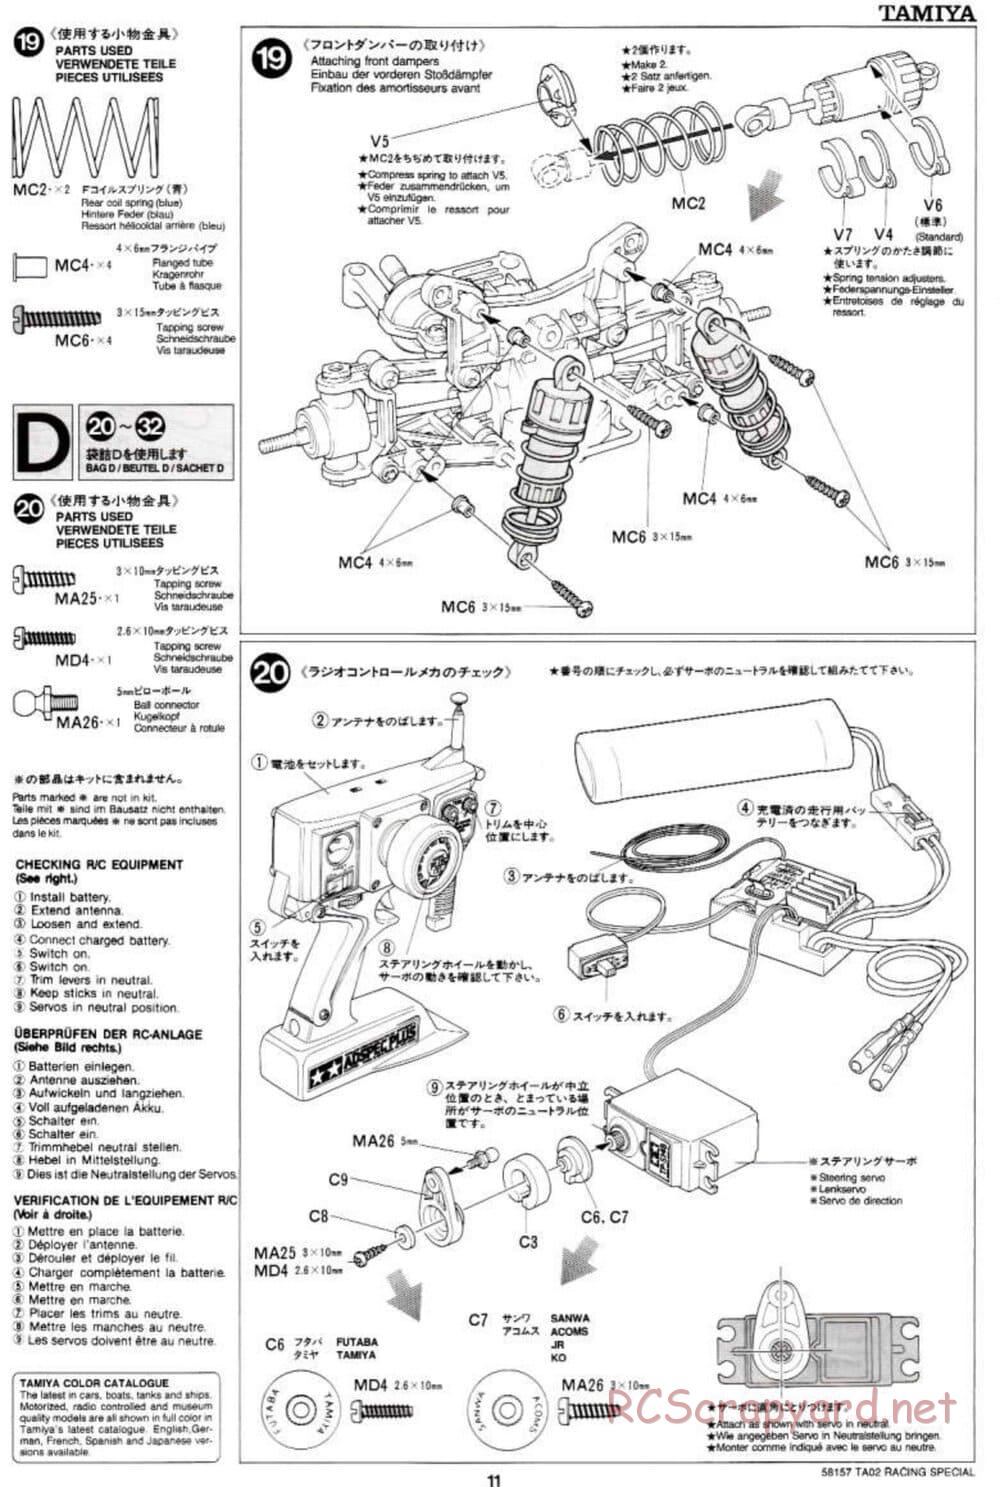 Tamiya - TA-02RS Chassis - Manual - Page 11